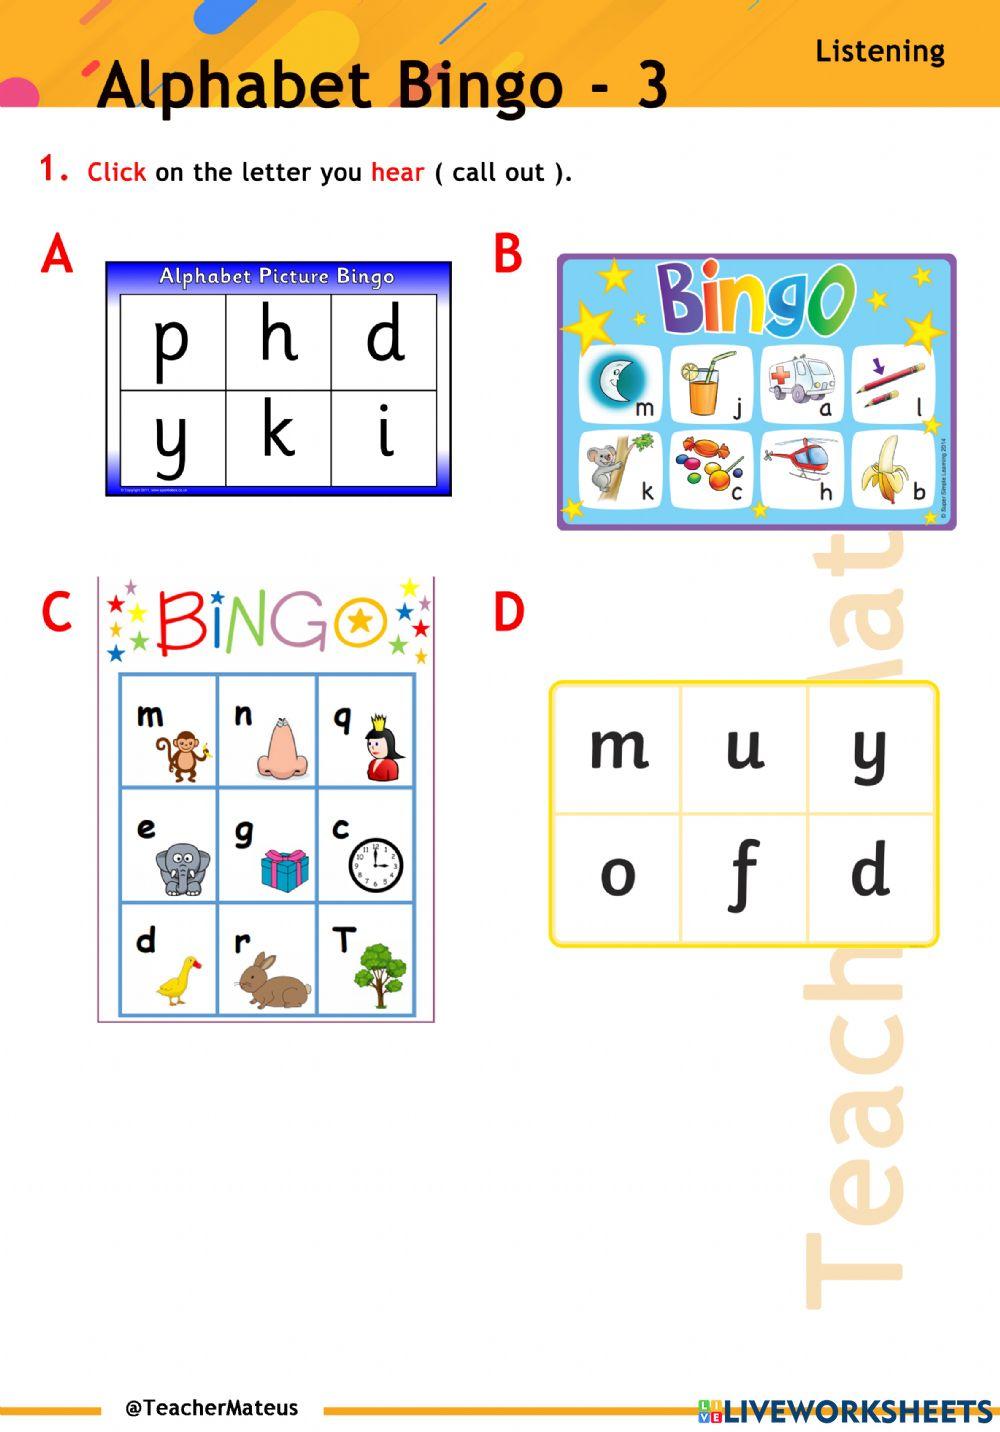 Alphabet Bingo - 3